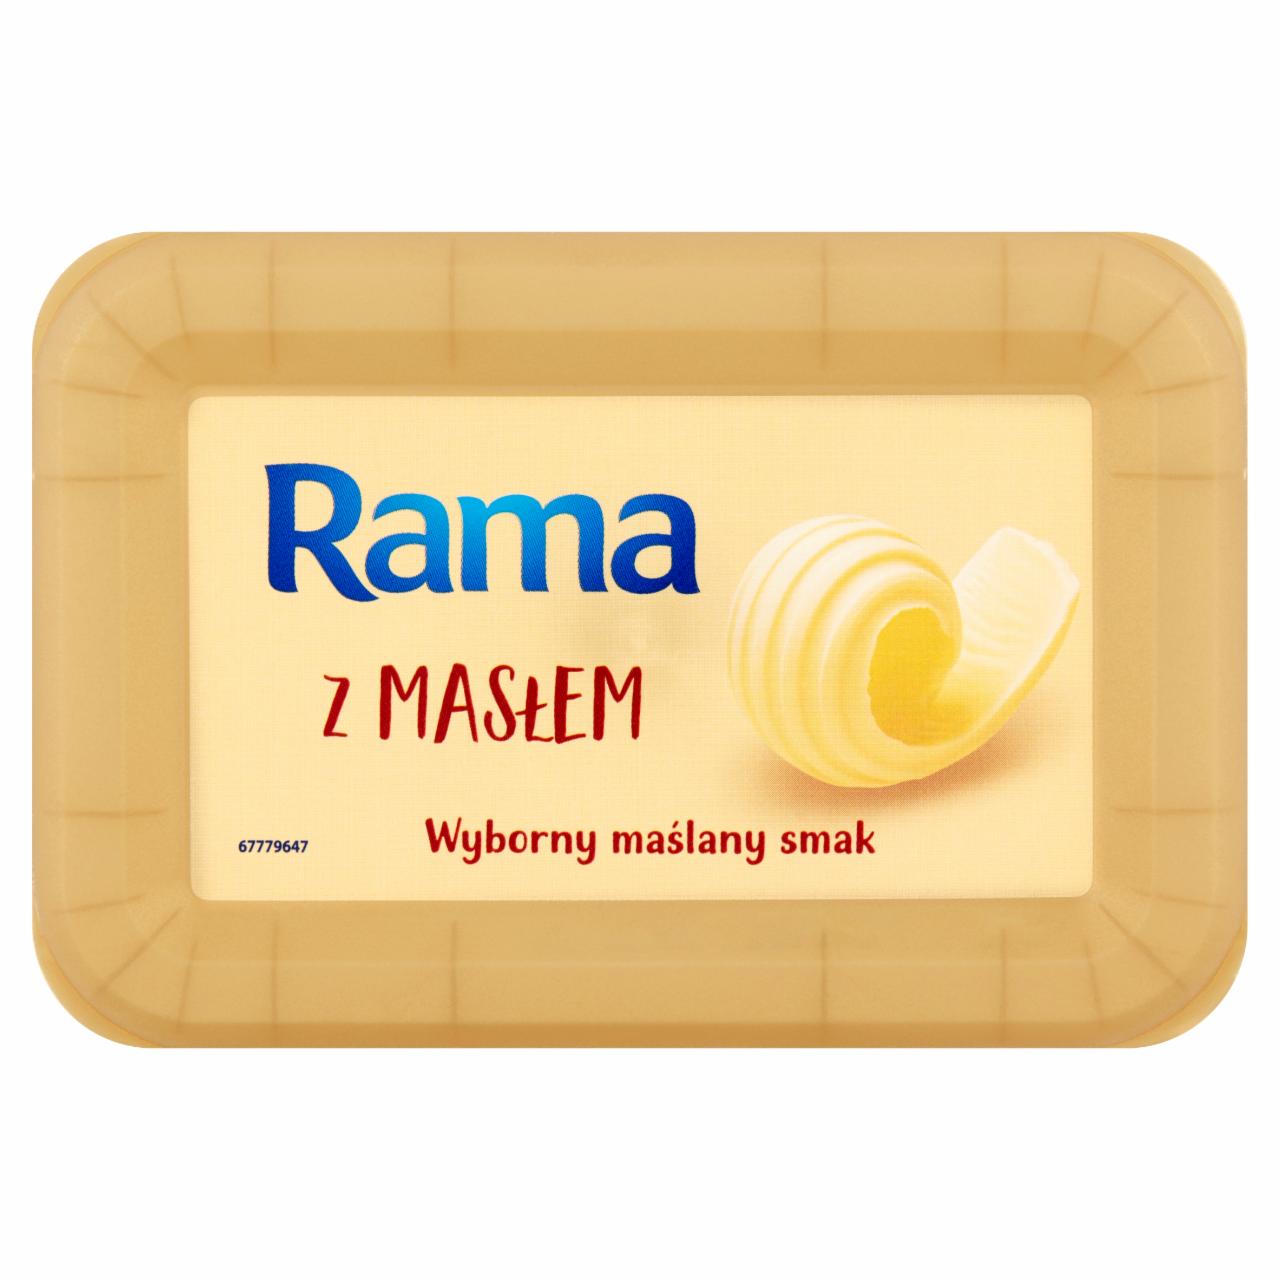 Zdjęcia - Rama Miks tłuszczowy z masłem 225 g